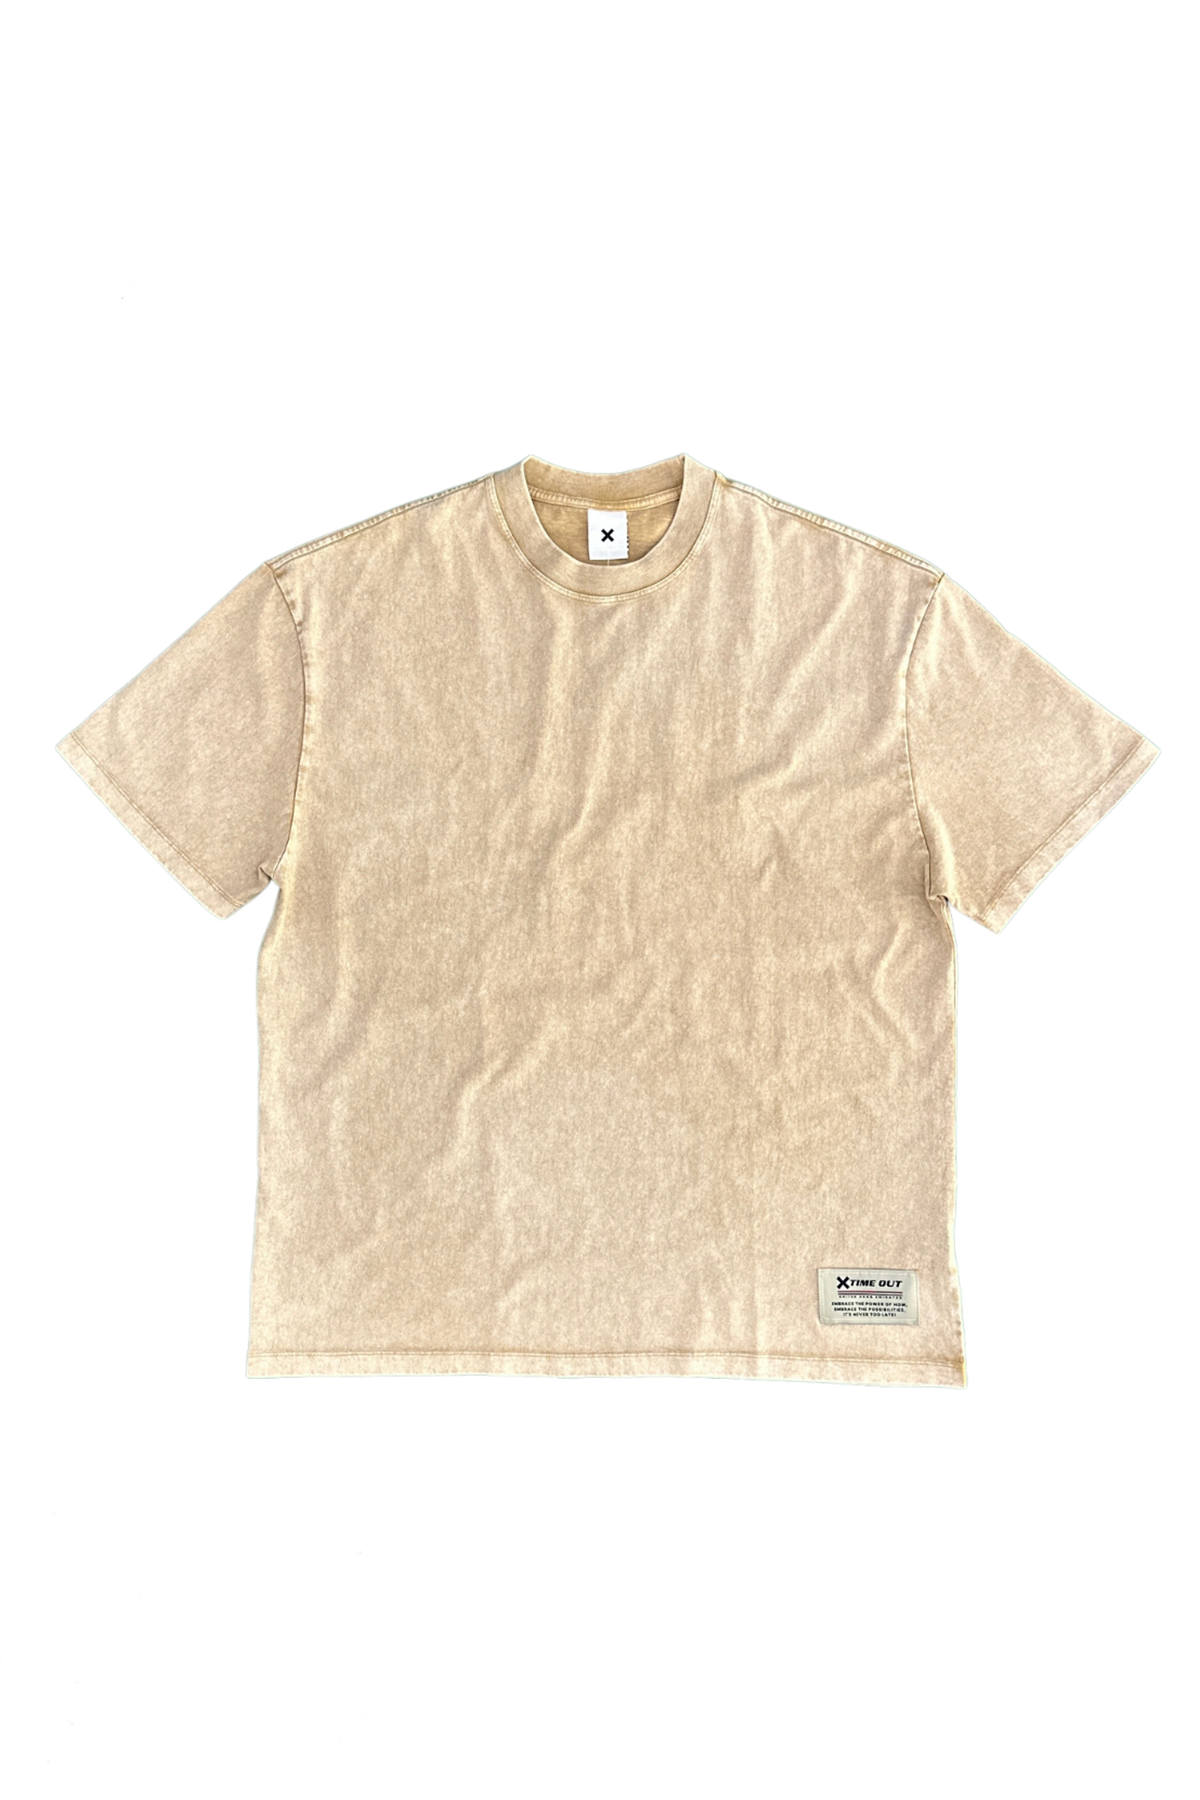 Stone-Wash-Oversized-Round-Neck-Khaki-T-shirt-Unisex-front